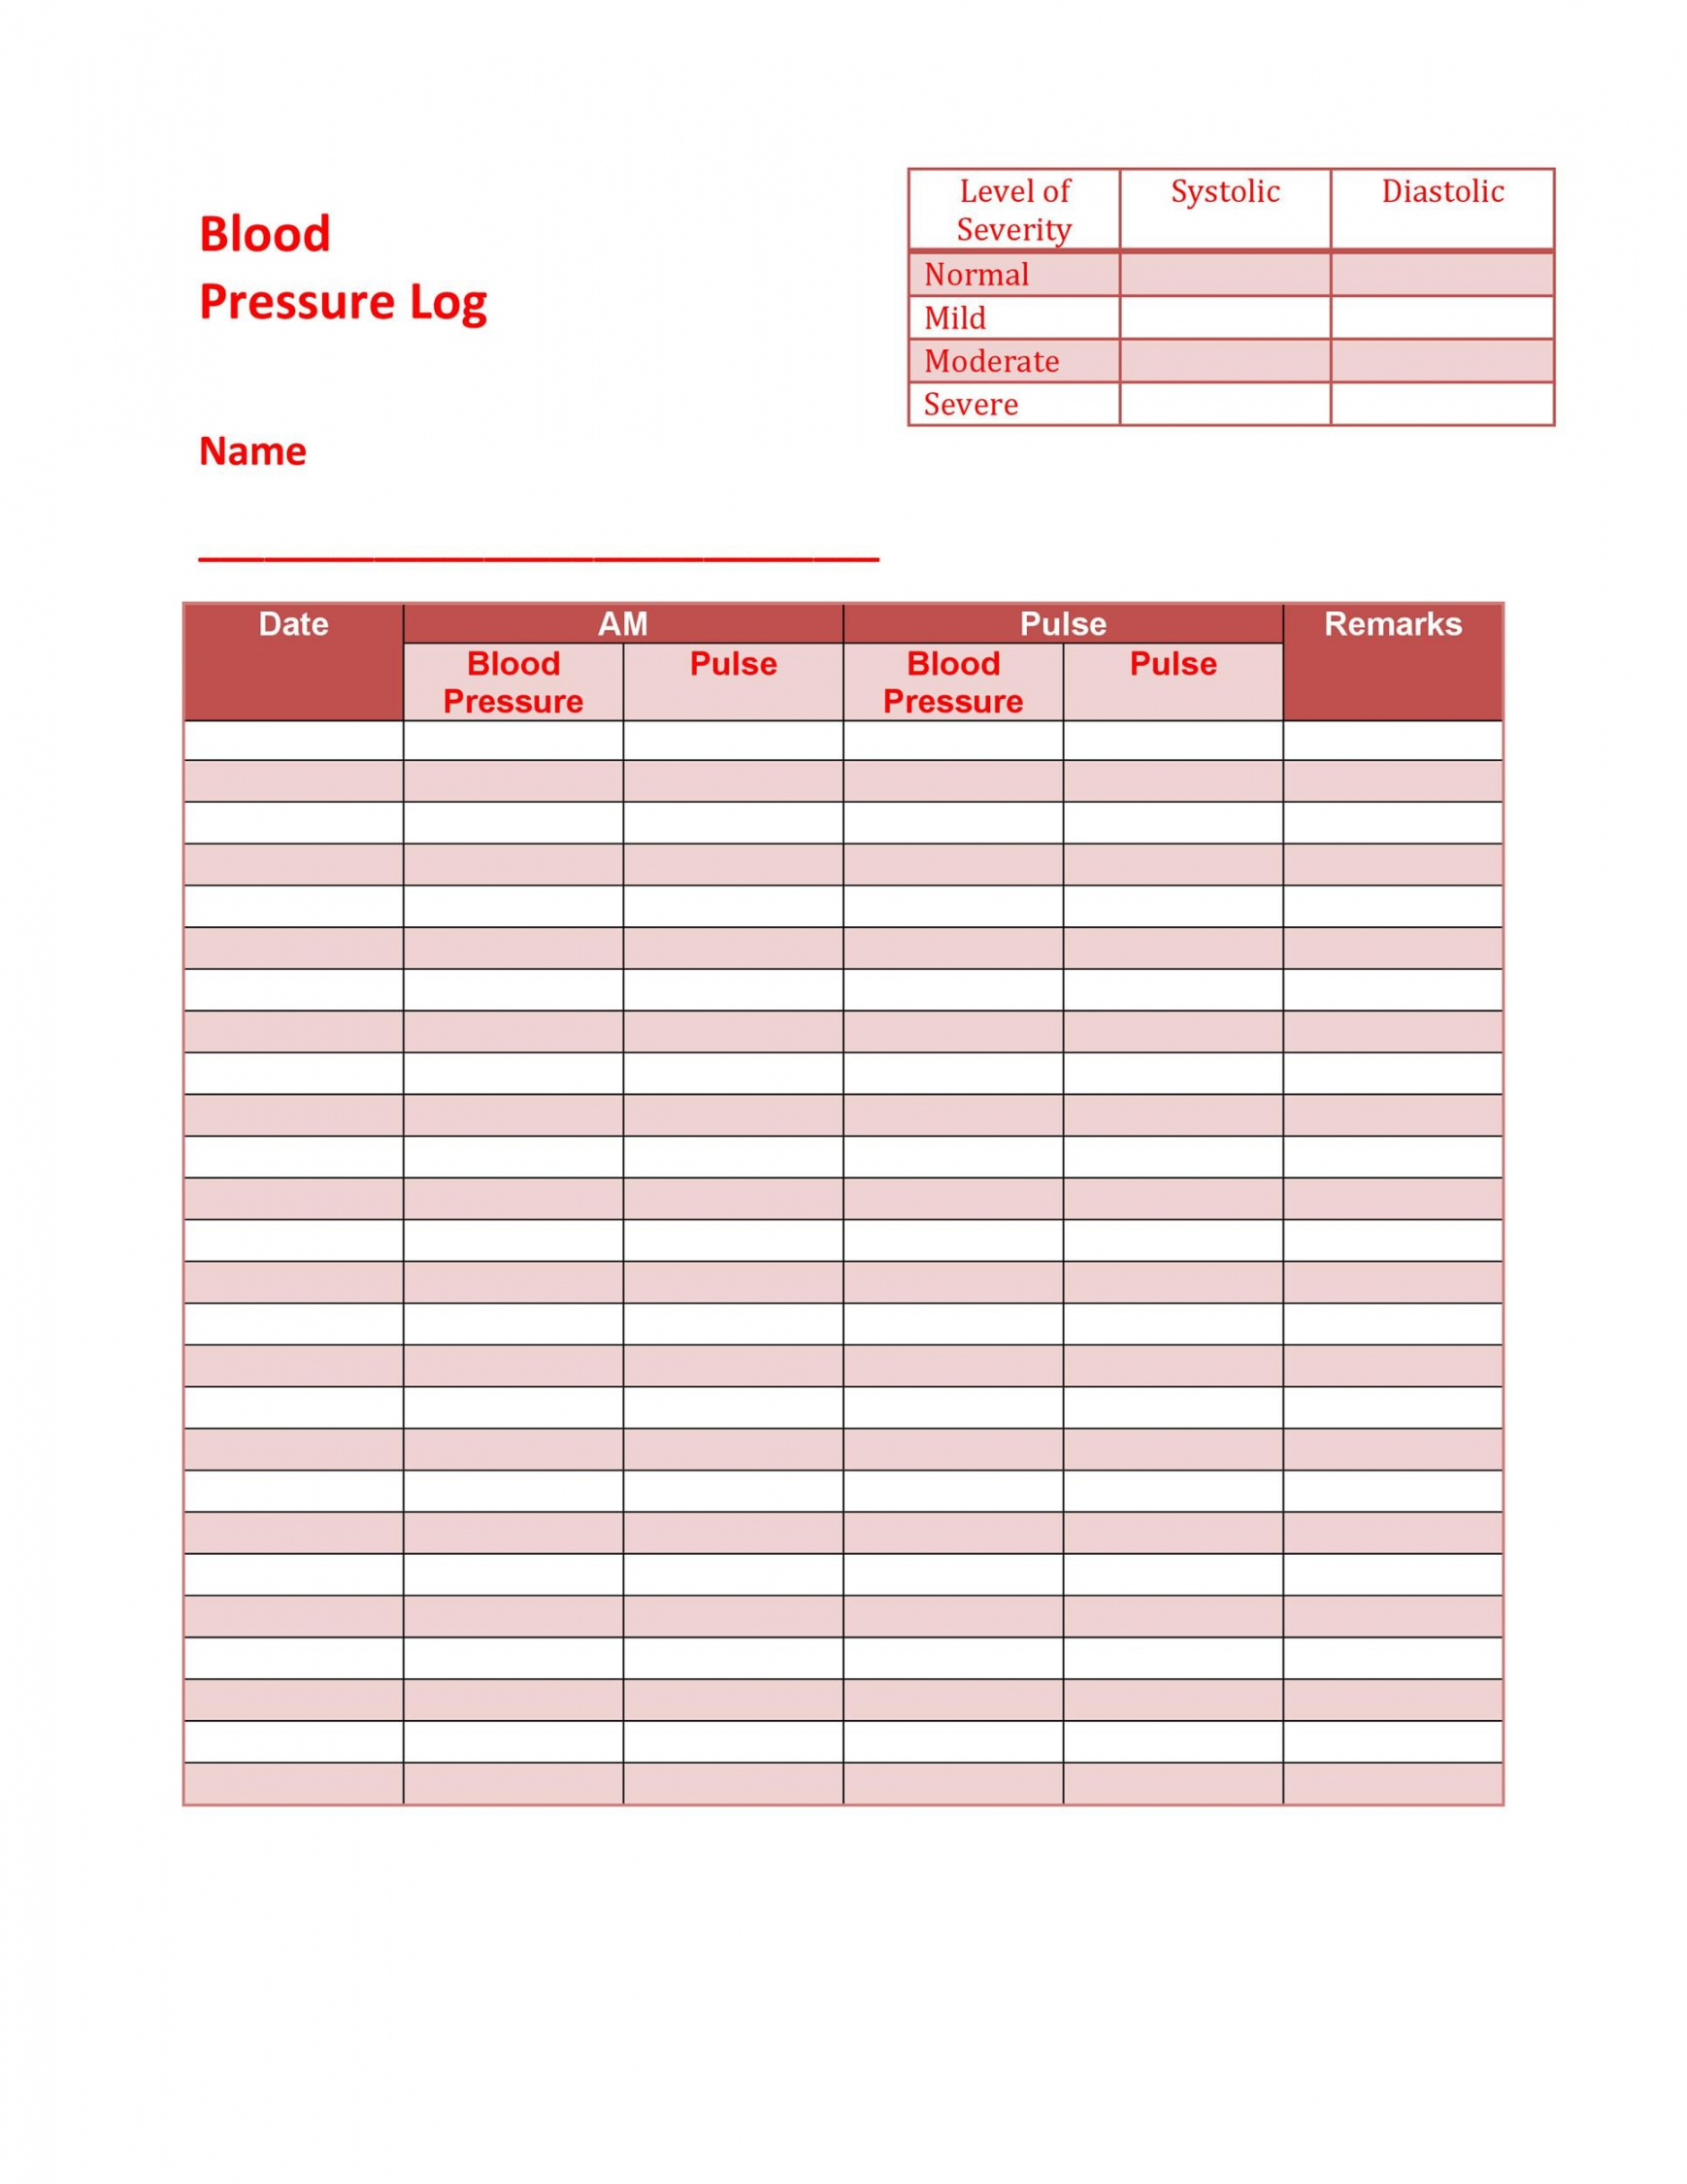 Free Blood Pressure Log Printable - Printable - + Printable Blood Pressure Log Templates ᐅ TemplateLab